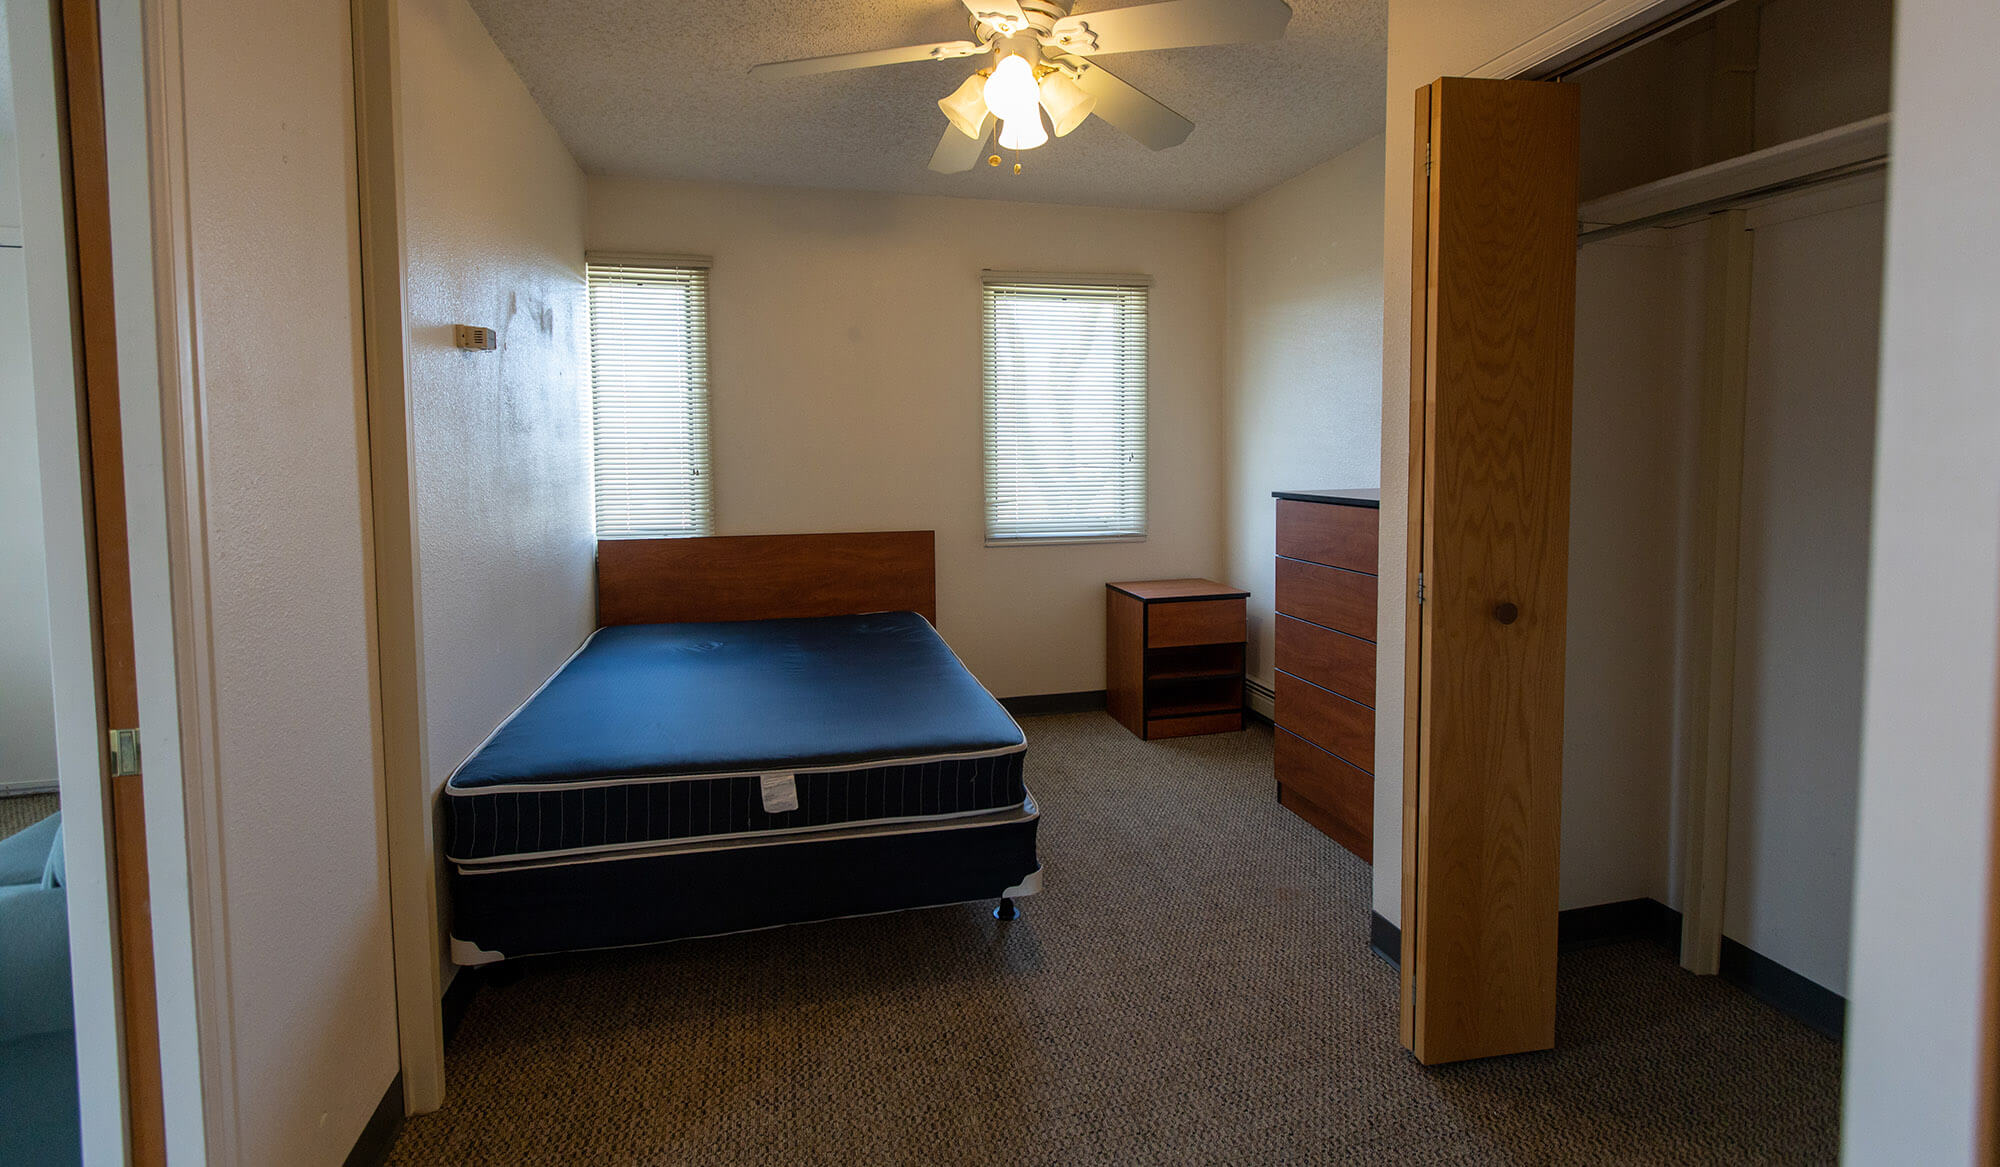 casper college thorson Apartment Interiors 22